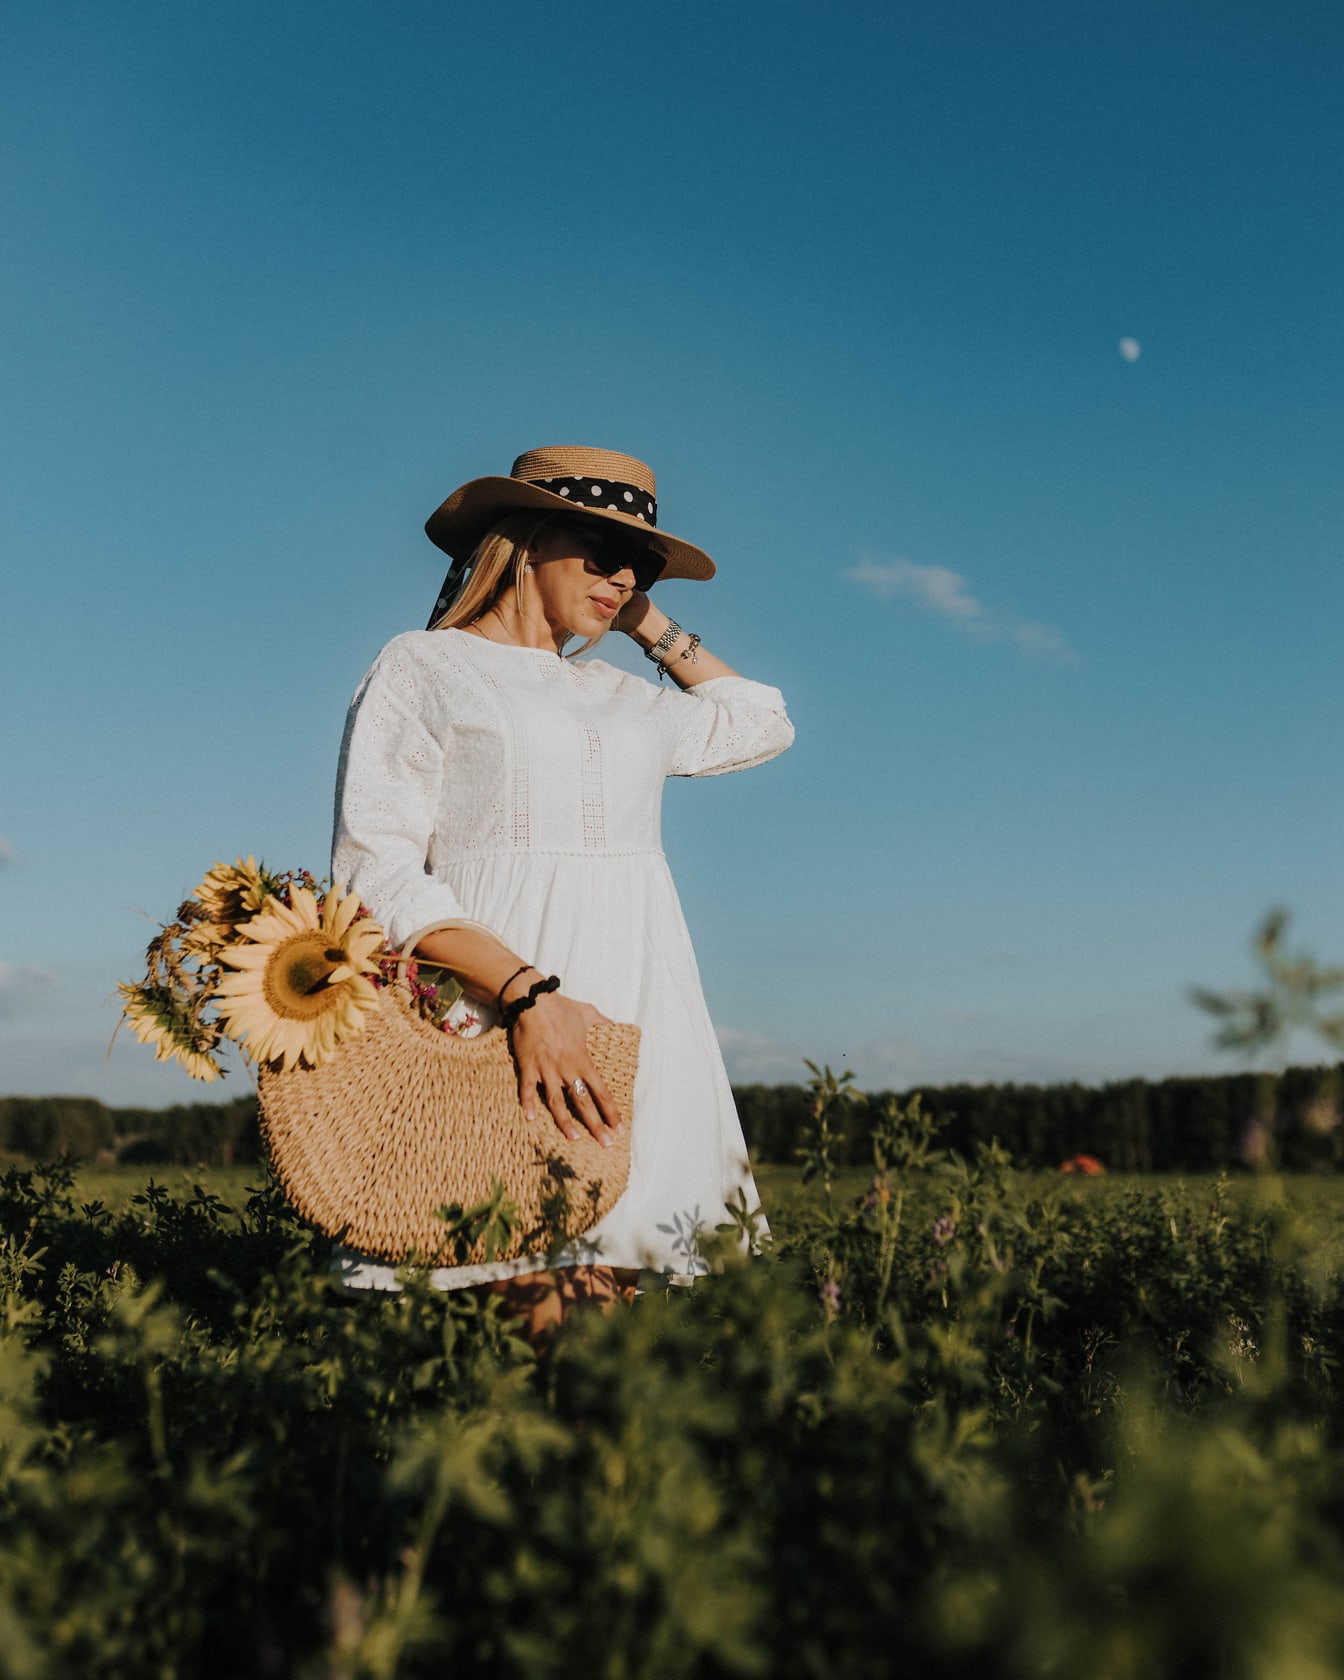 Fotomodella con abito bianco da campagna e cappello di paglia